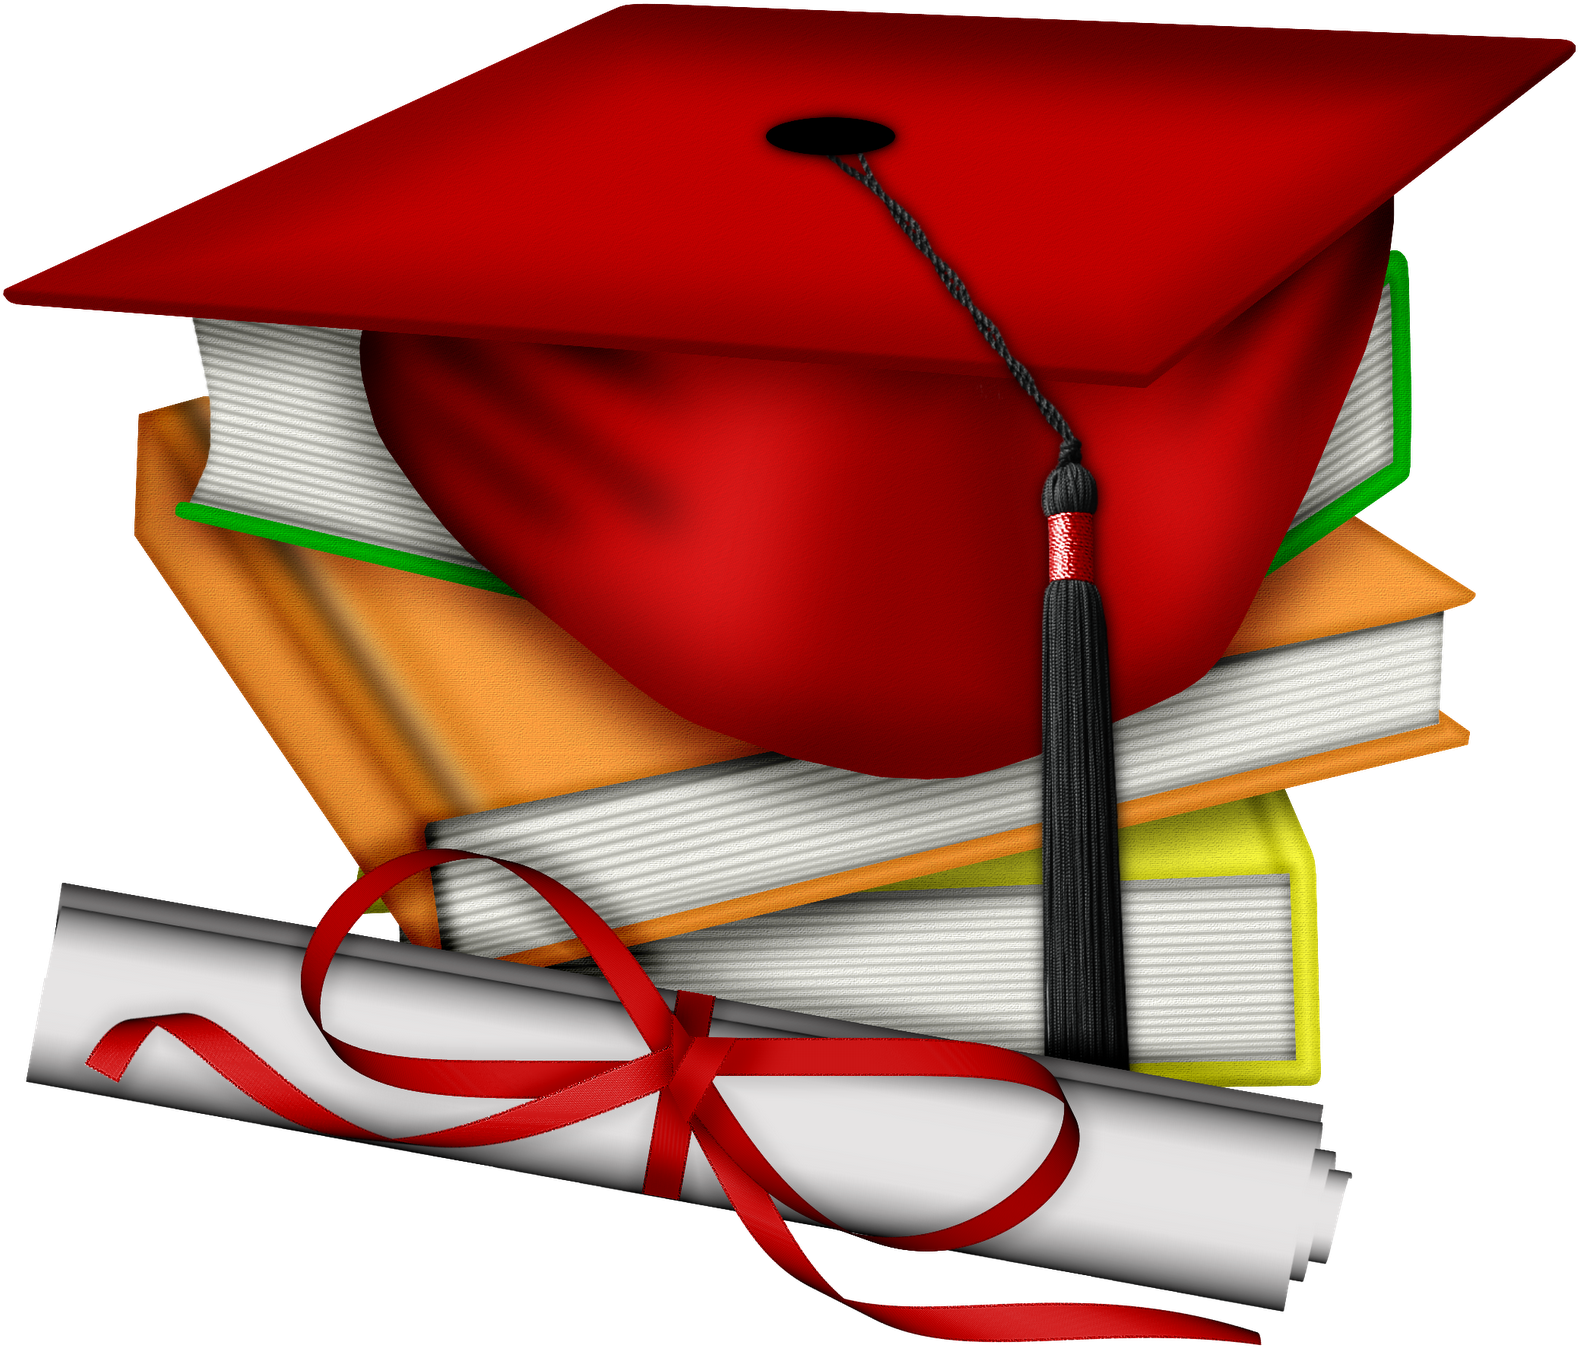 Escola & Formatura - Free Graduation Clip Art (1600x1376)